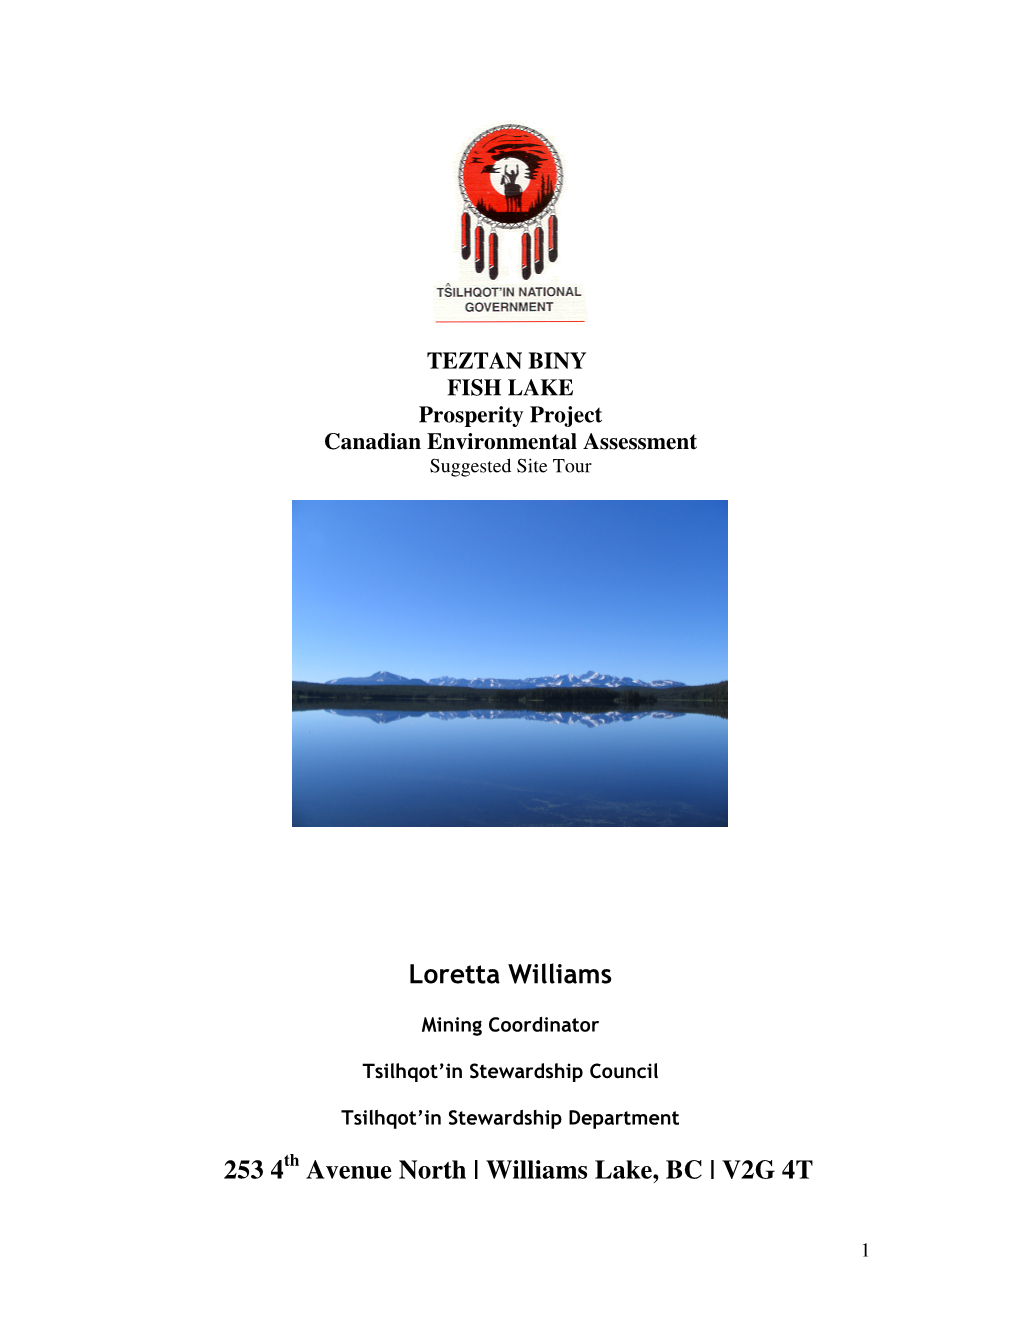 Loretta Williams 253 4 Avenue North | Williams Lake, BC | V2G 4T